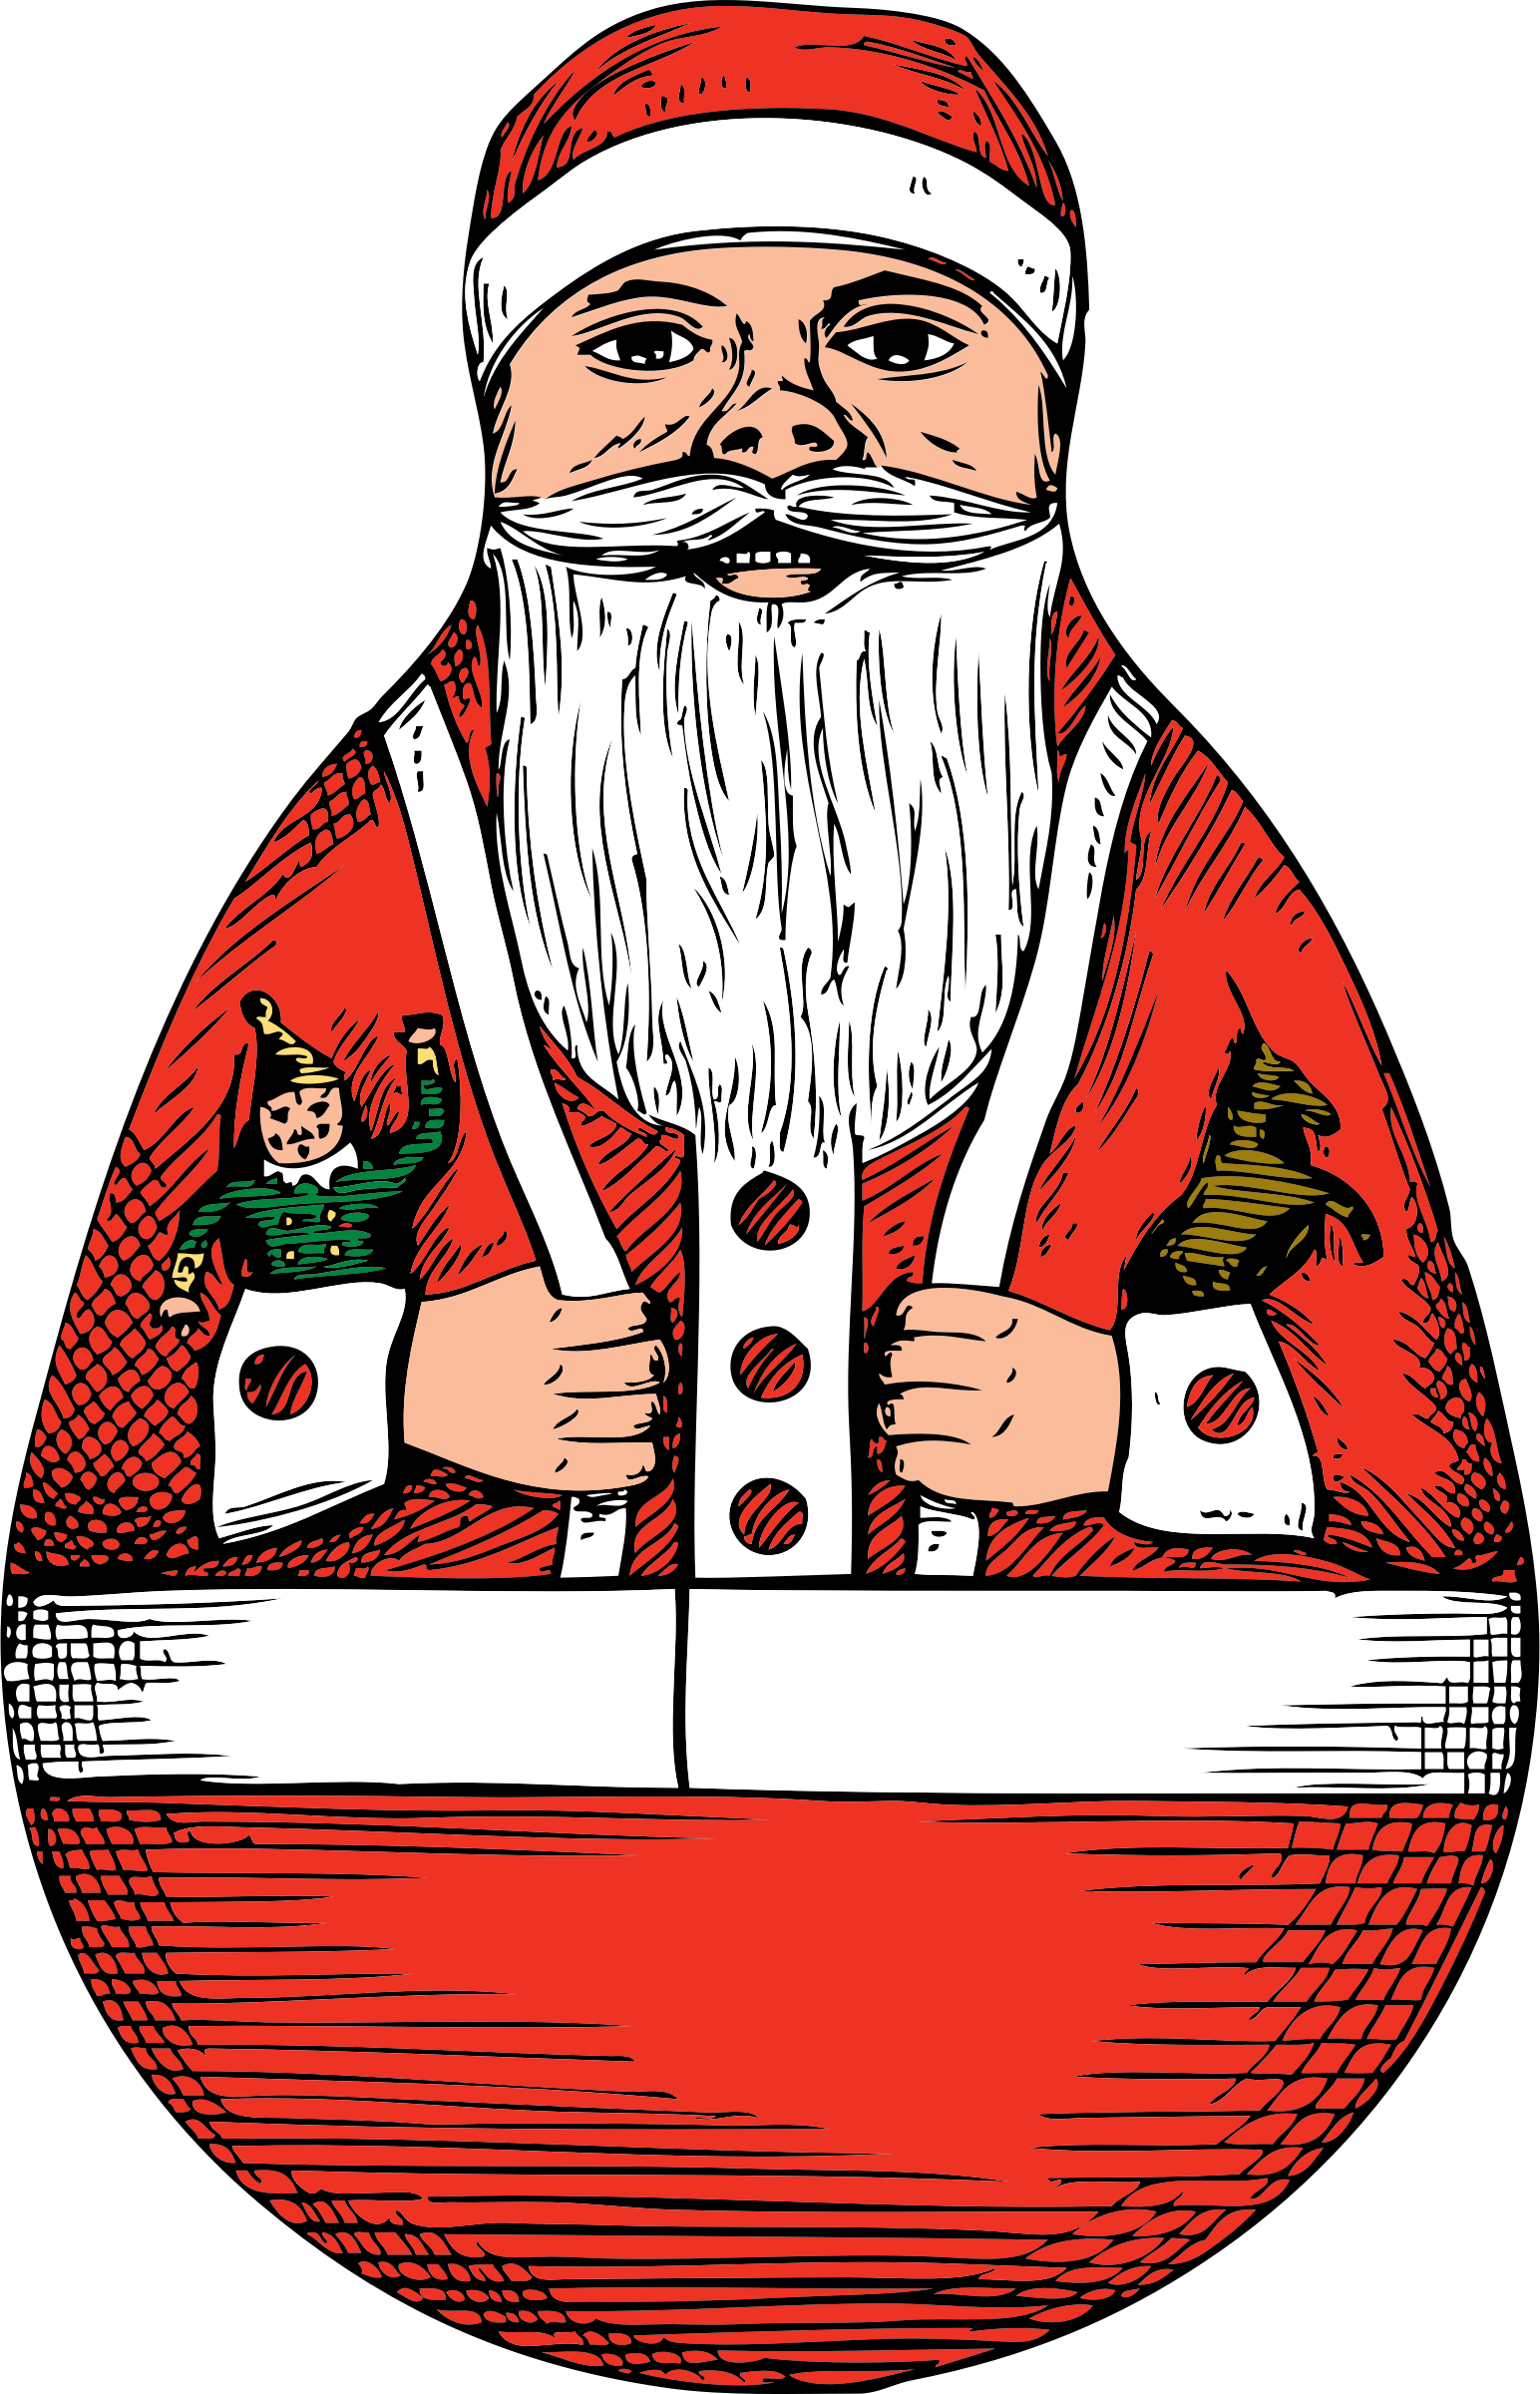 A Drawing Of A Santa Claus